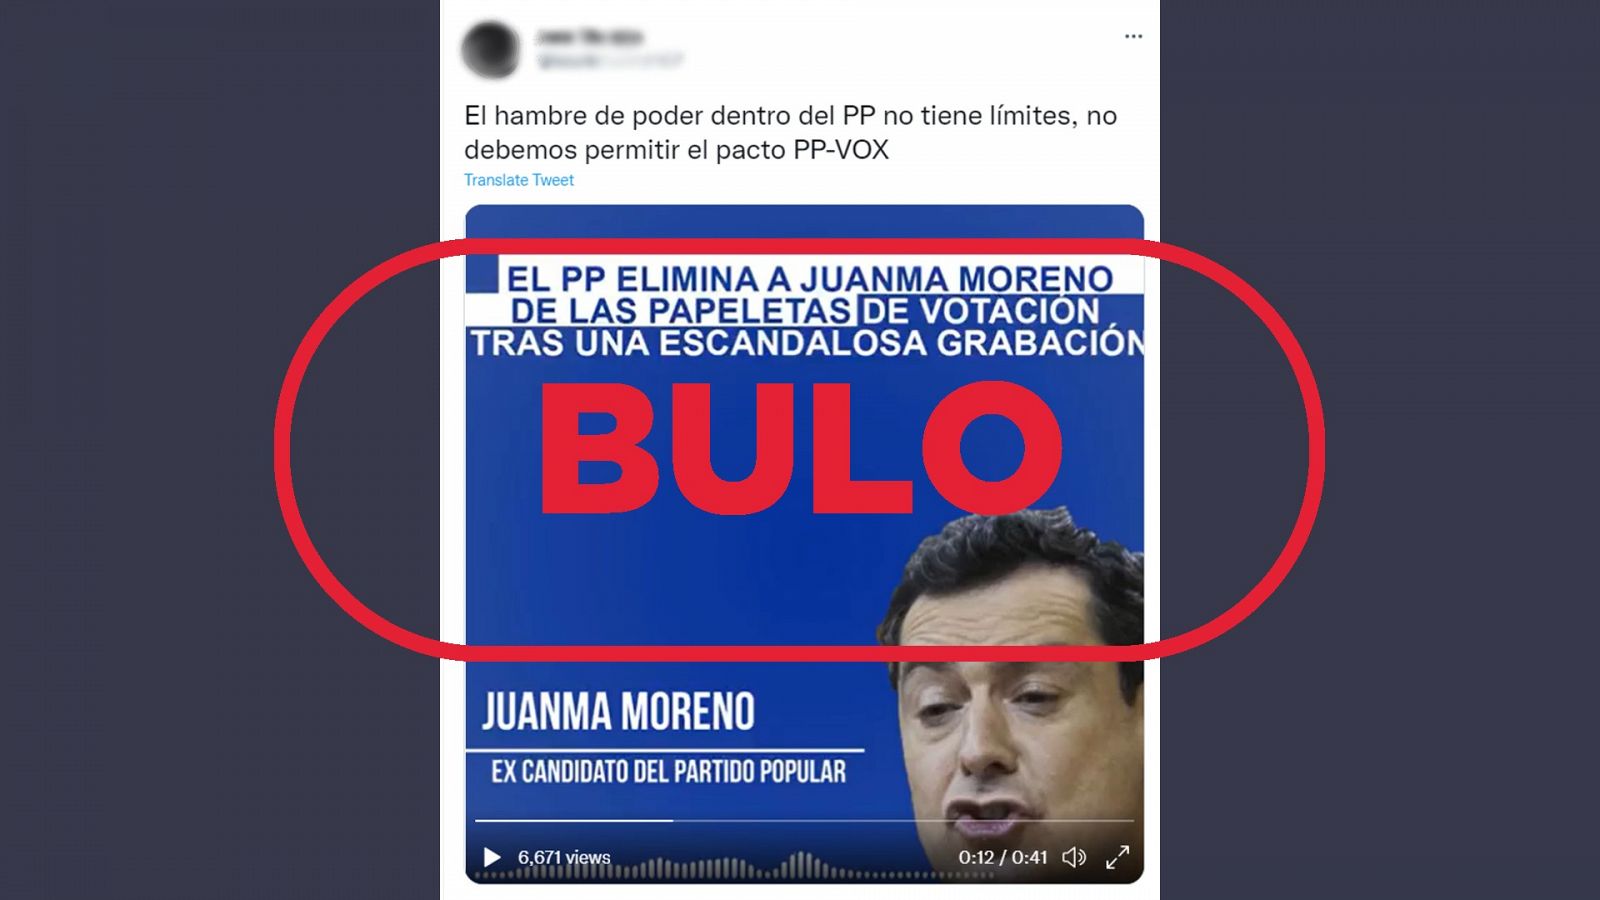 Mensaje que acompaña al audio manipulado sobre la conversación de Juanma Moreno con el sello bulo